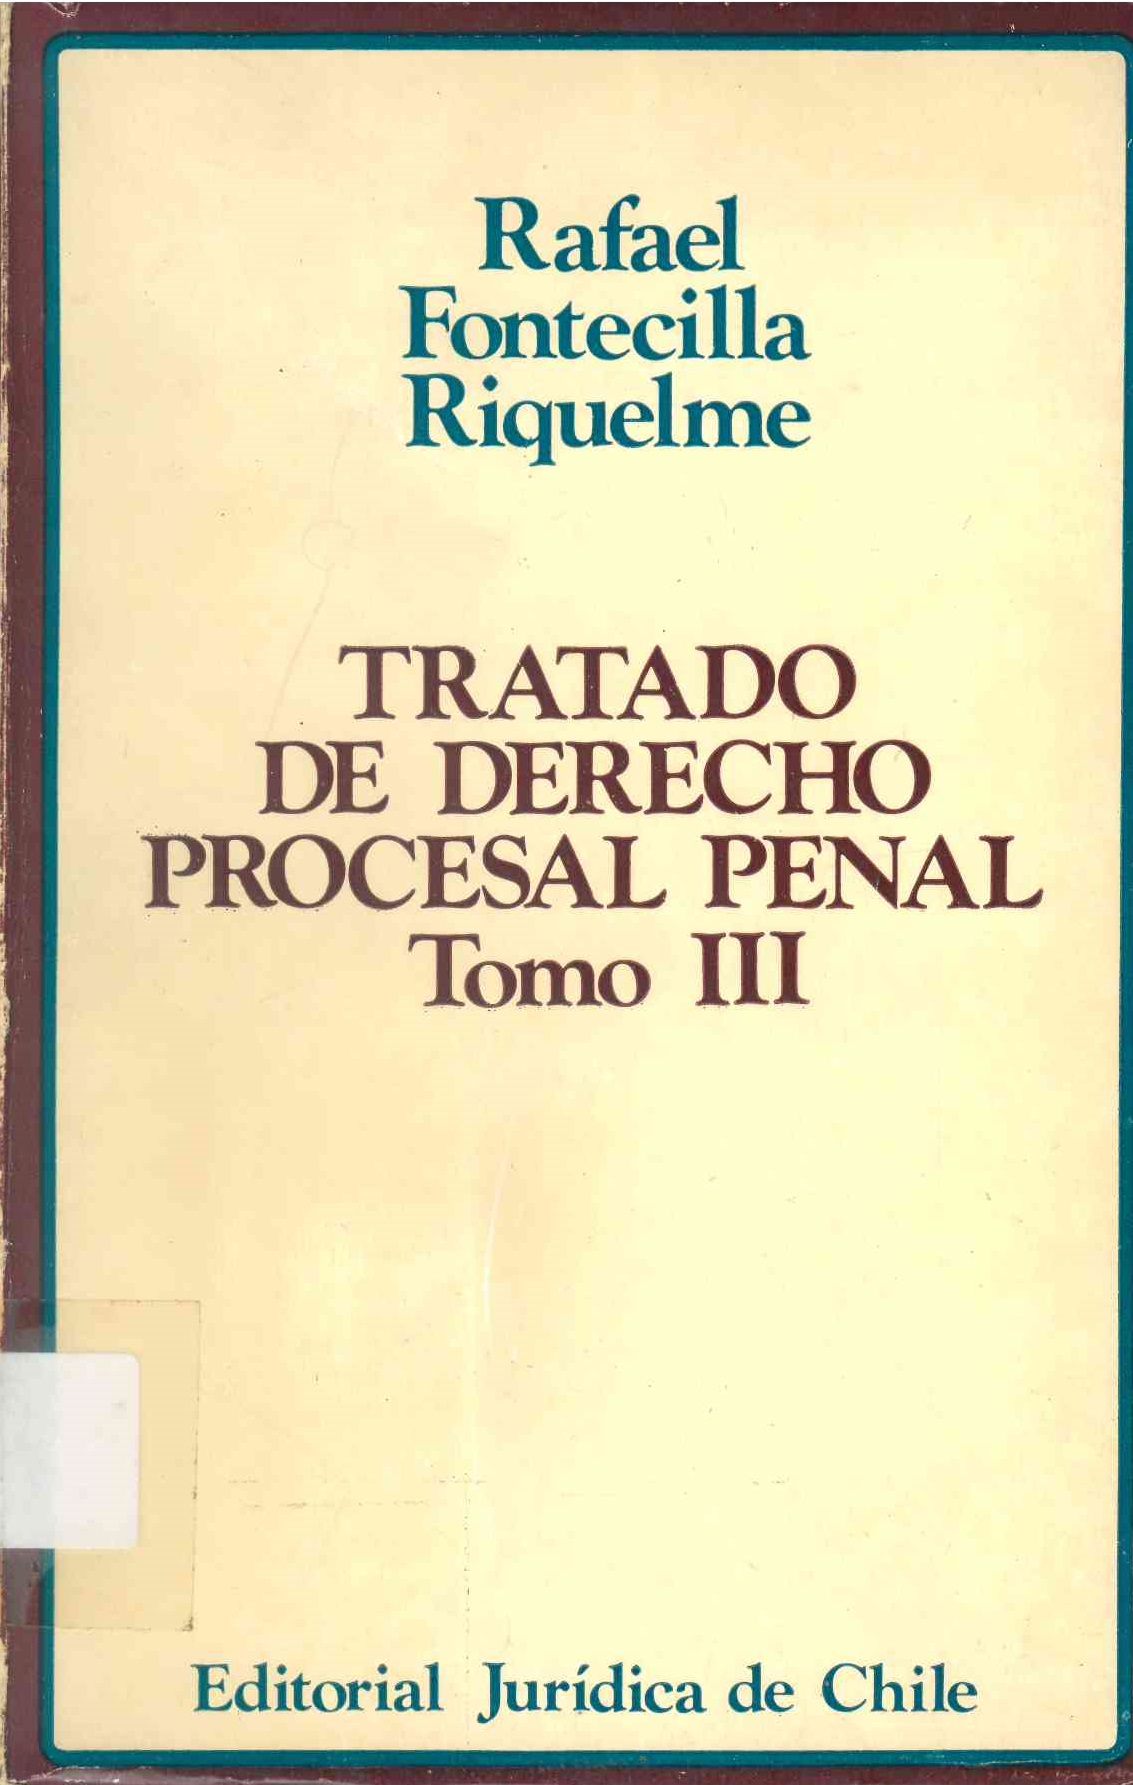 Tratado de derecho procesal penal; Tomo III: Naturaleza jurídica del proceso penal y las normas que lo regulan en la doctrina, en la ley y en la jurisprudencia de nuestros tribunales.